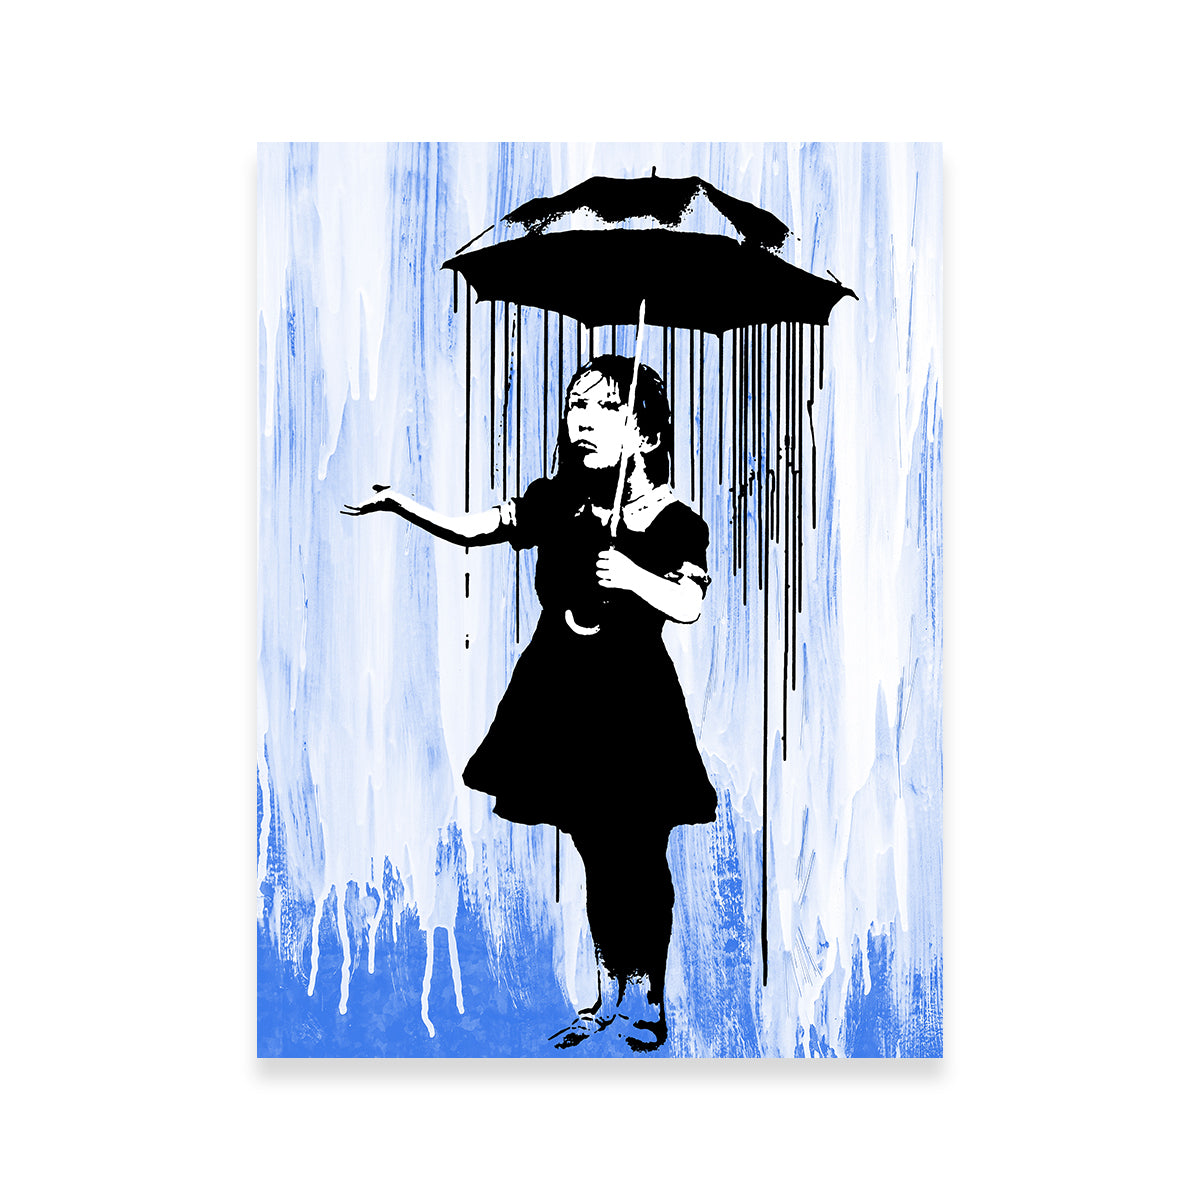 Rain Girl